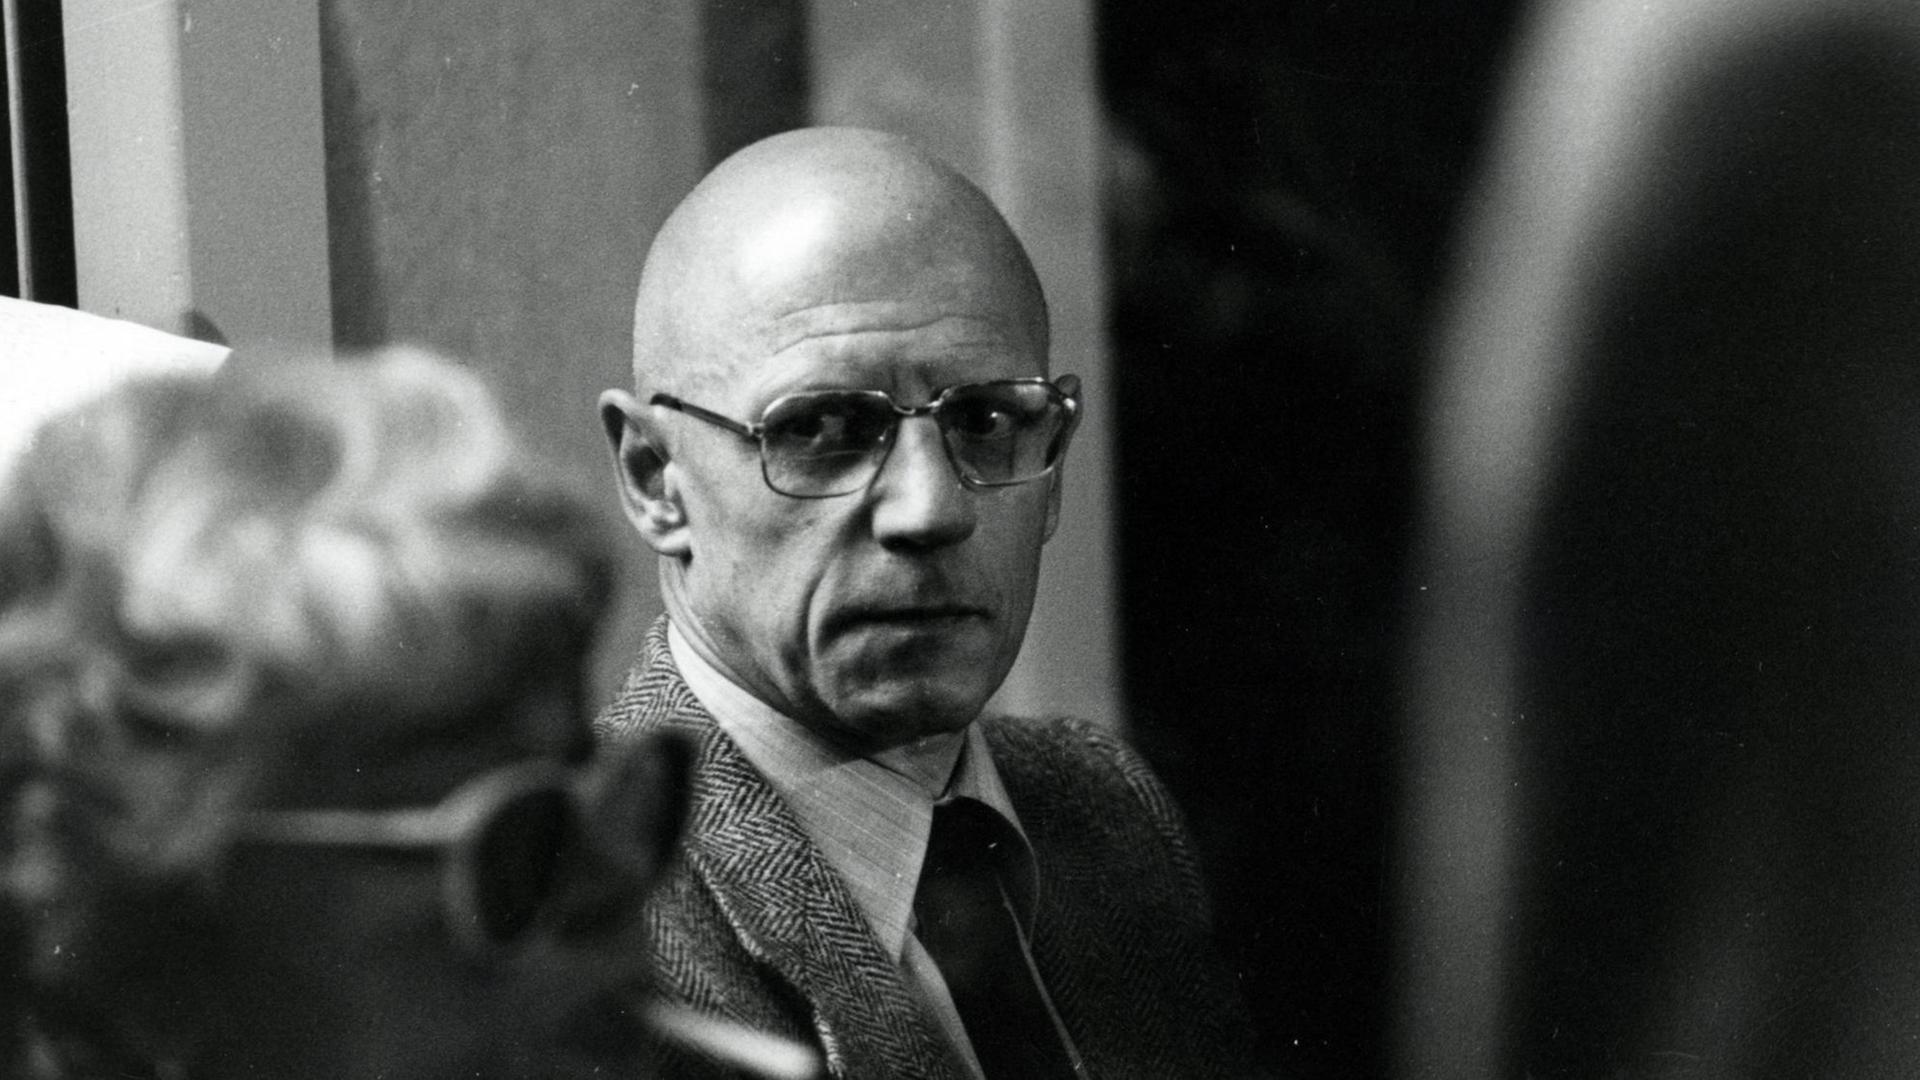 Der französische Philosoph Michel Foucault (1926 - 1984) bei einer Veranstaltung, 1982. Schwarzweiß-Fotografie.